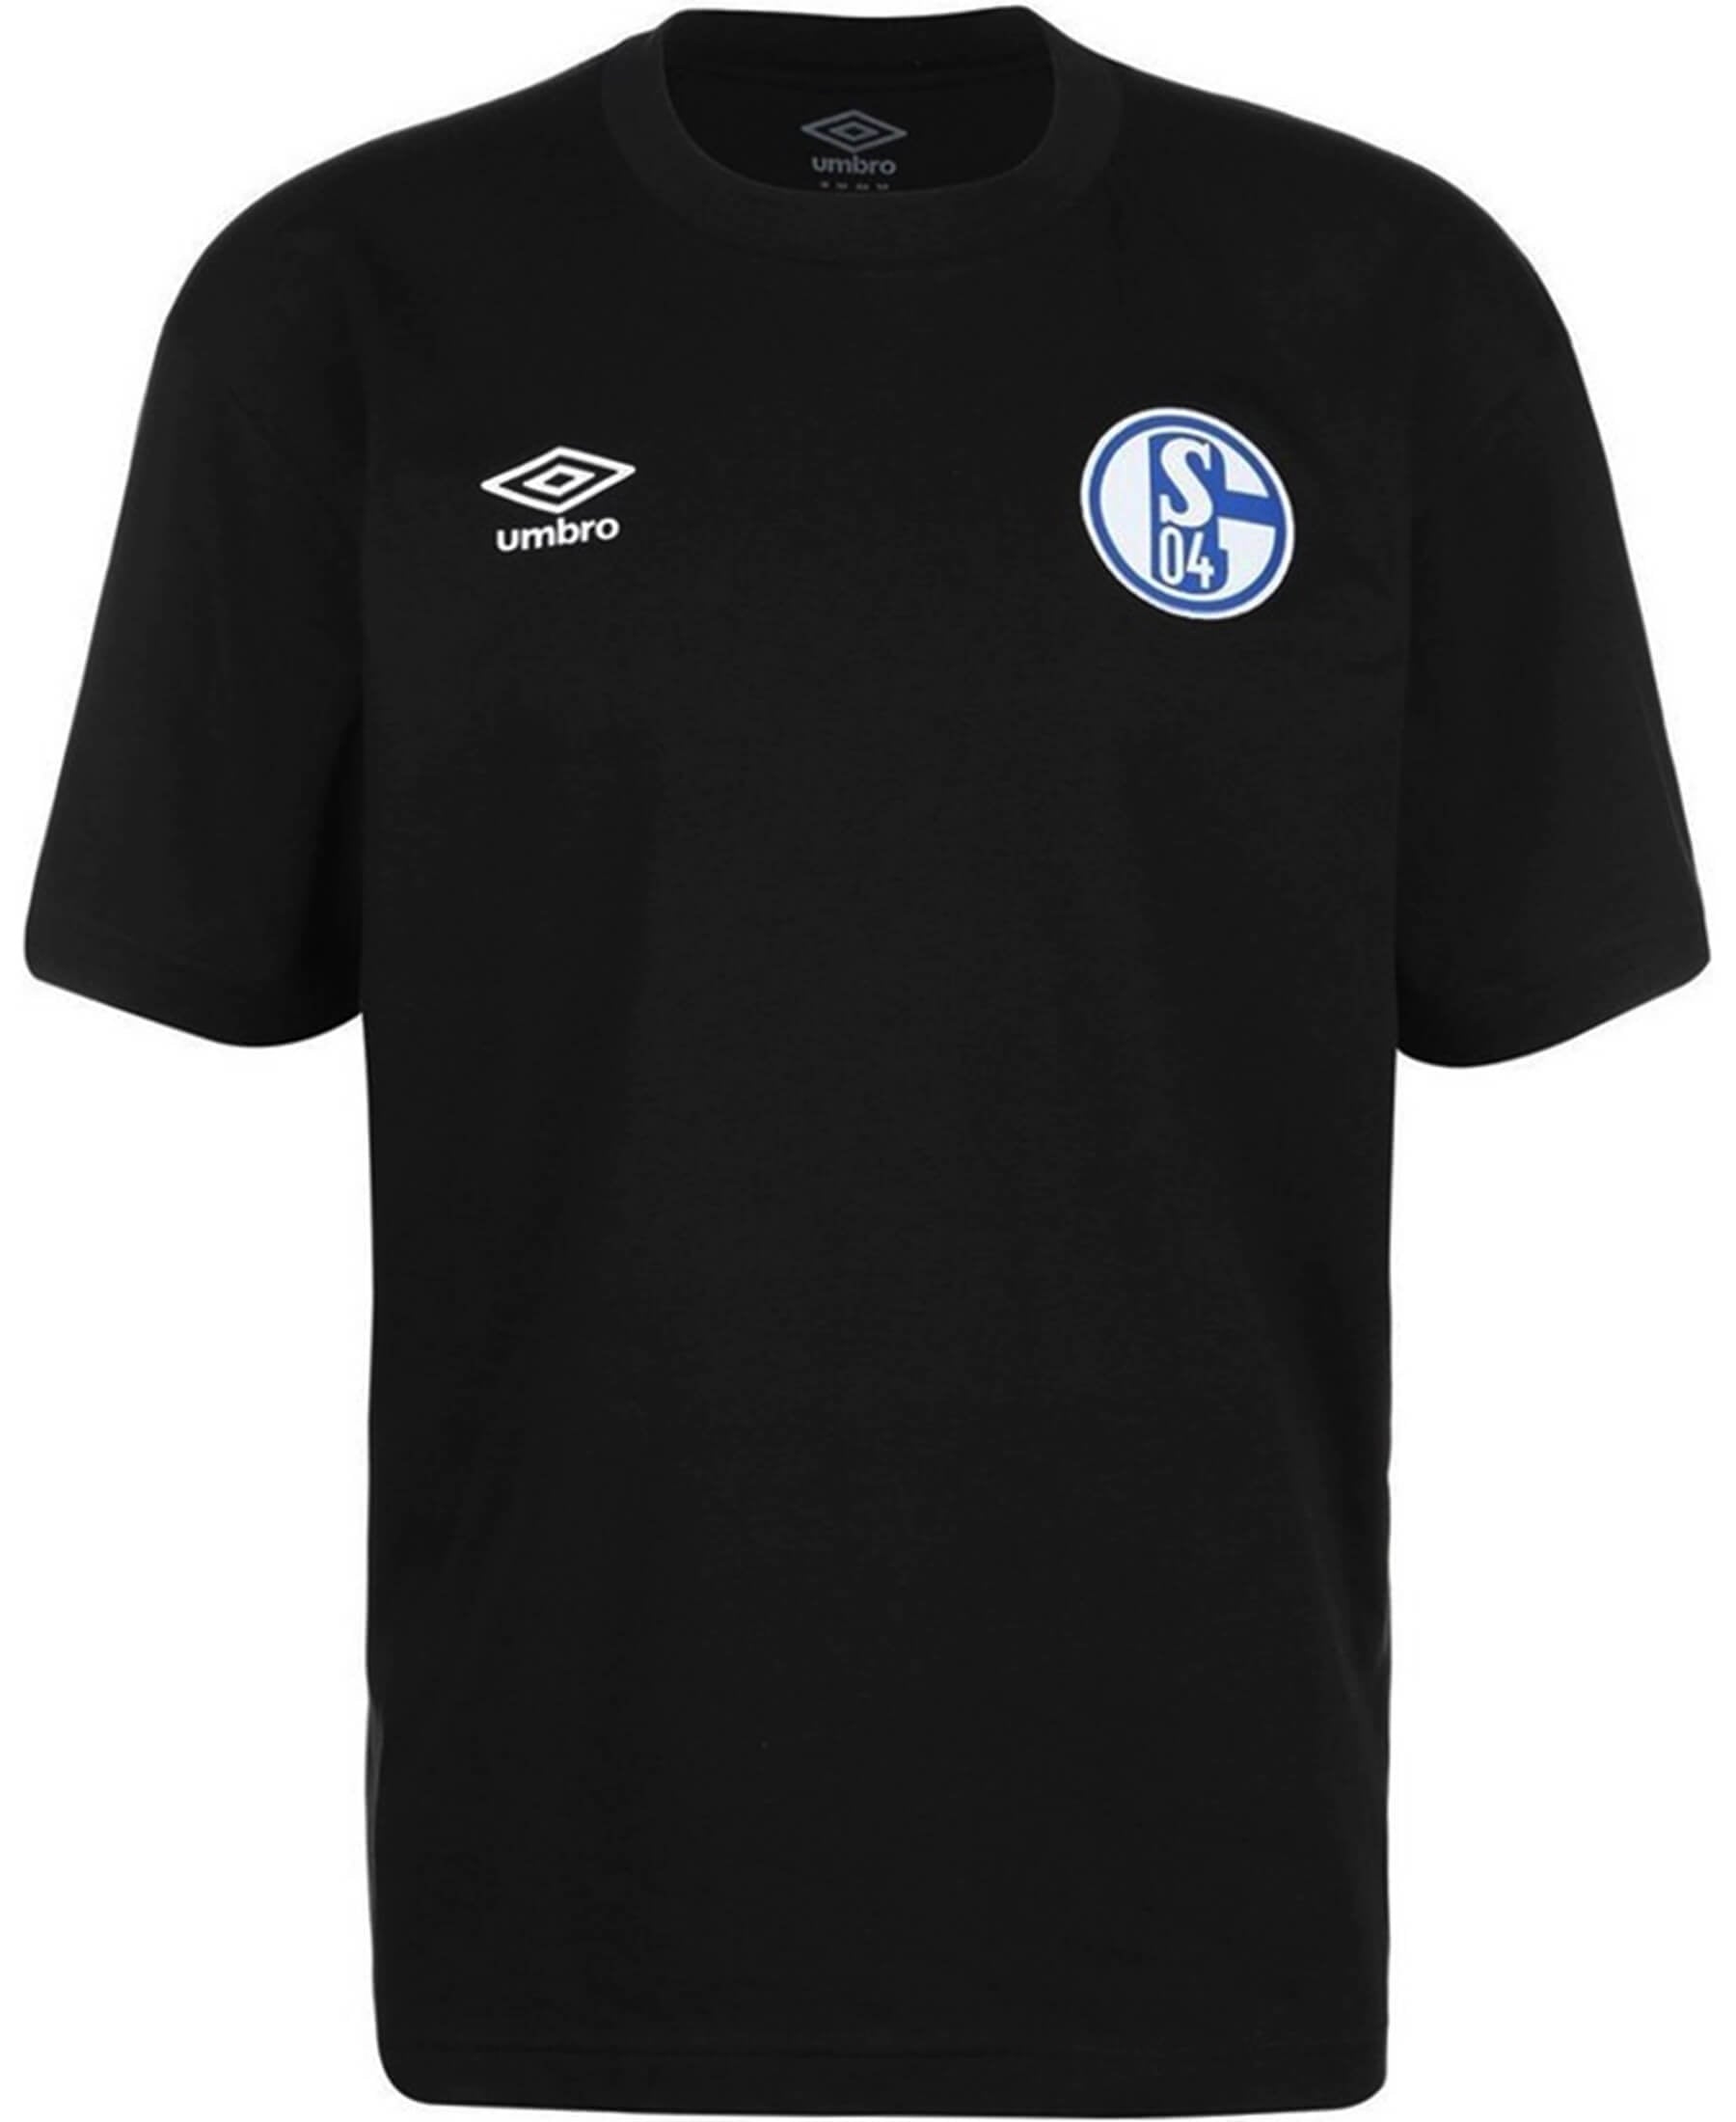 Das Umbro FC Schalke 04 S04 Kinder Travel T-Shirt 94434u-060 ist perfekt für junge Fans des Vereins. Mit seinem coolen Design, dem Schalke 04 Logo und bequemem Material ist es ideal für den Alltag oder Reisen. Jetzt bei SHOP4TEAMSPORT erhältlich. Zeige deine Unterstützung für Schalke 04!